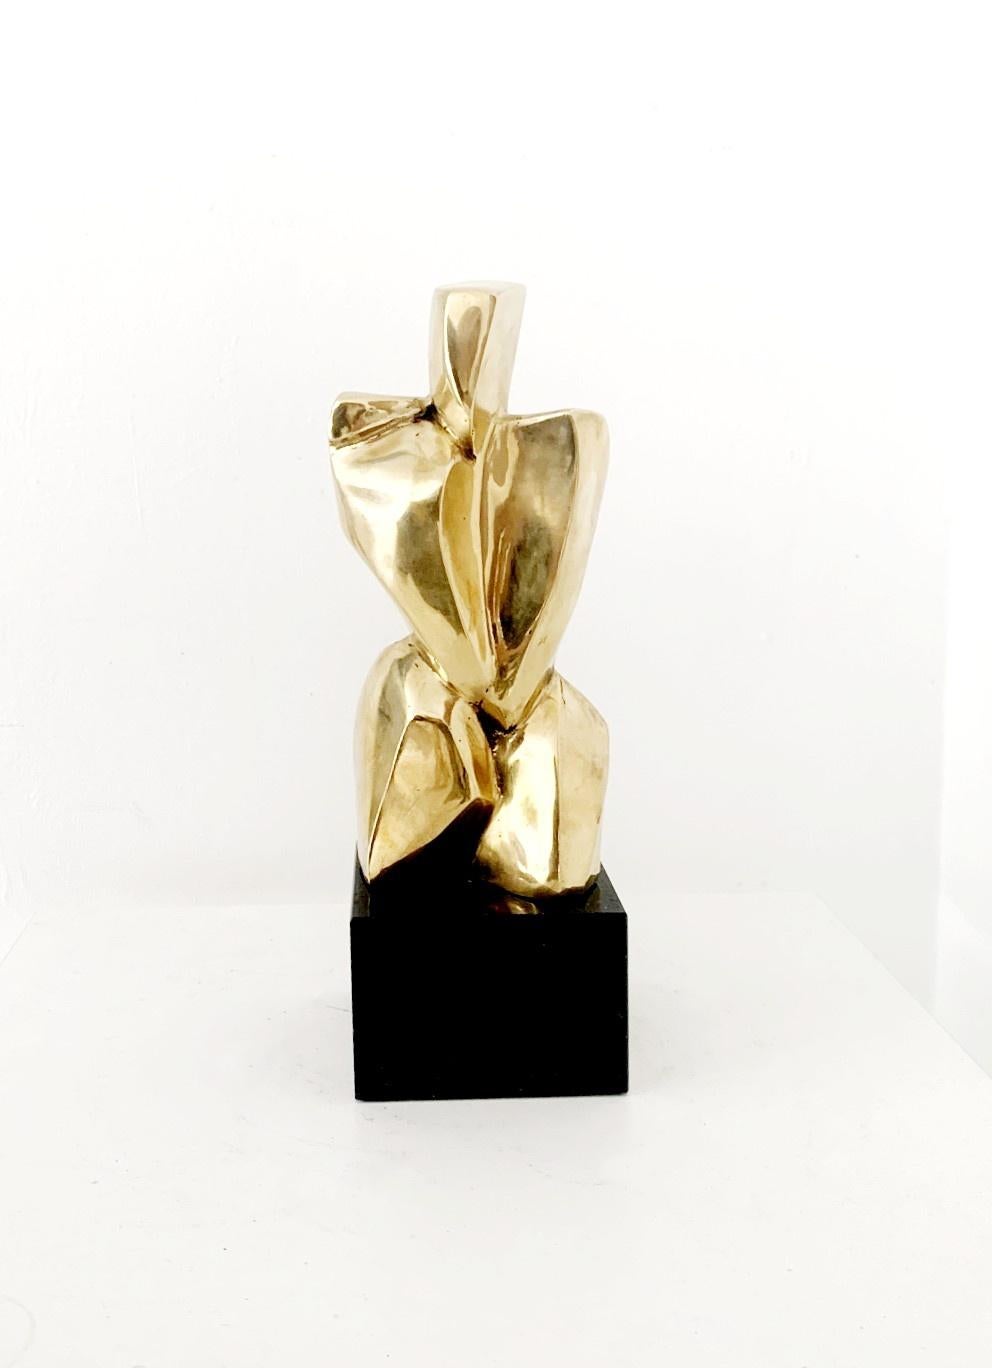 Ryszard Piotrowski Nude Sculpture – Akt - 21. Jahrhundert, Zeitgenössische figurative Skulptur aus Messing, Polnische Kunst